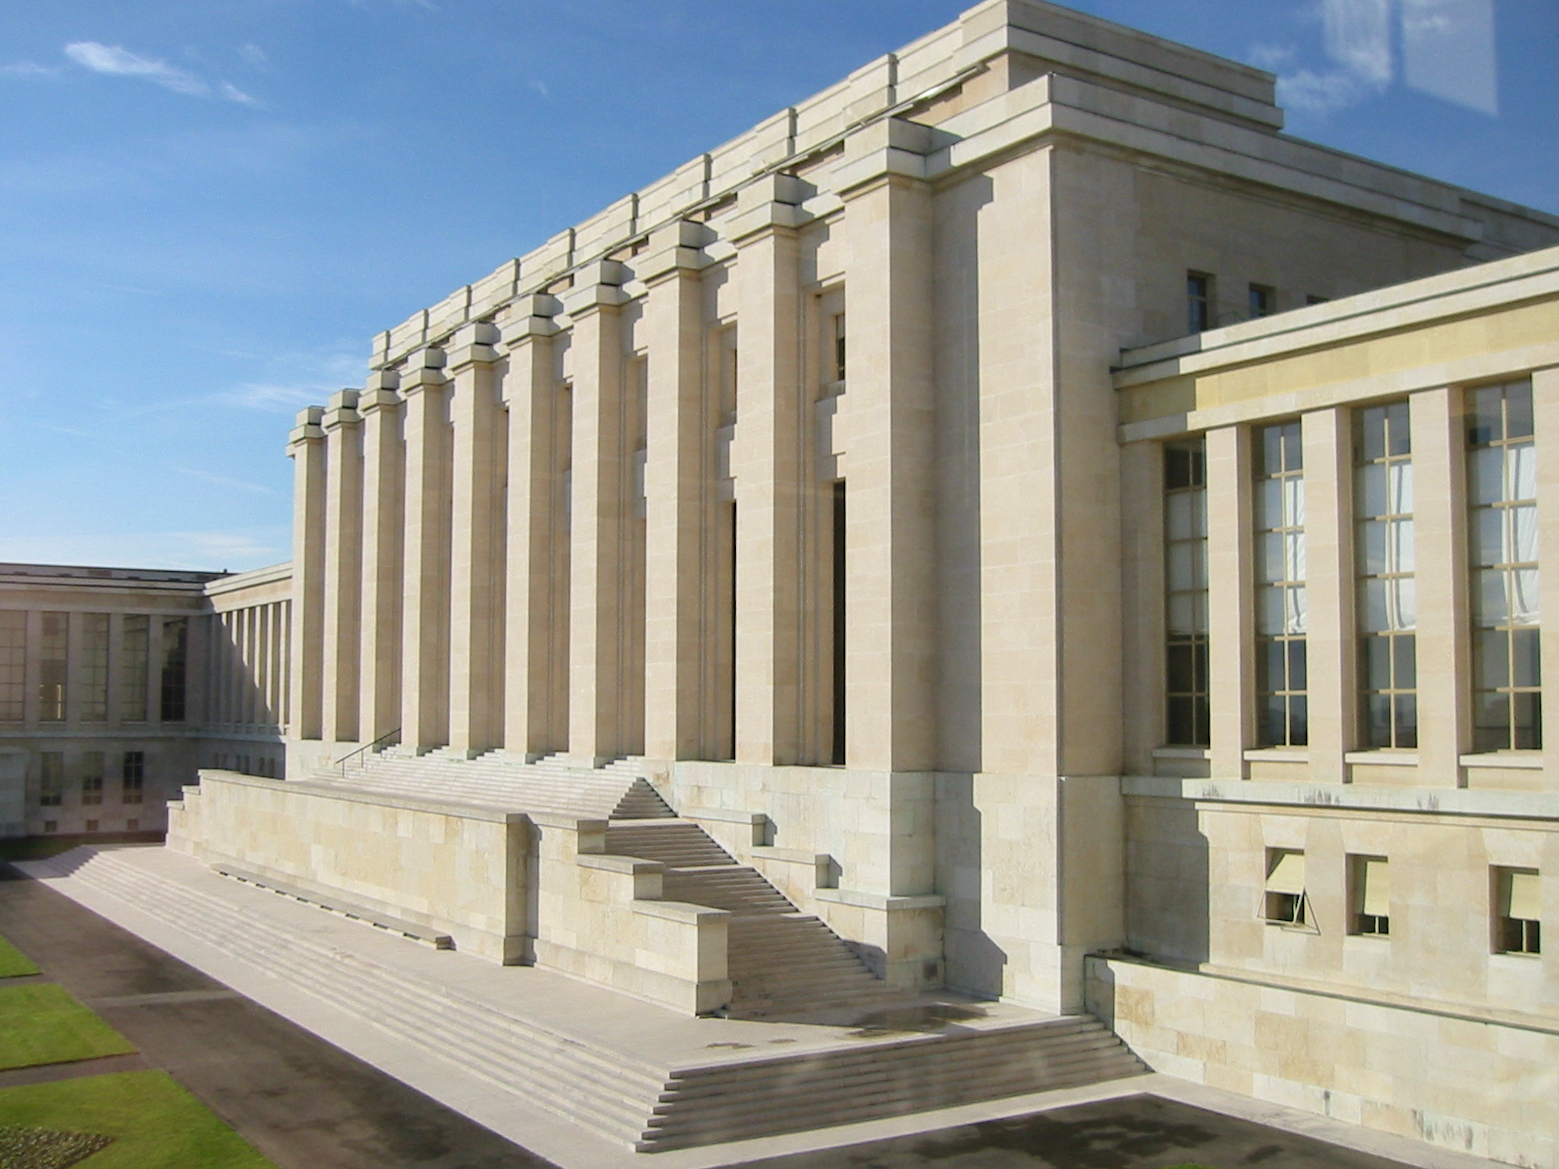 По иронии судьбы, помпезное здание штаб-квартиры Лиги наций в Женеве было достроено открыто в 1938 году, когда сама организация переживала стремительный упадок